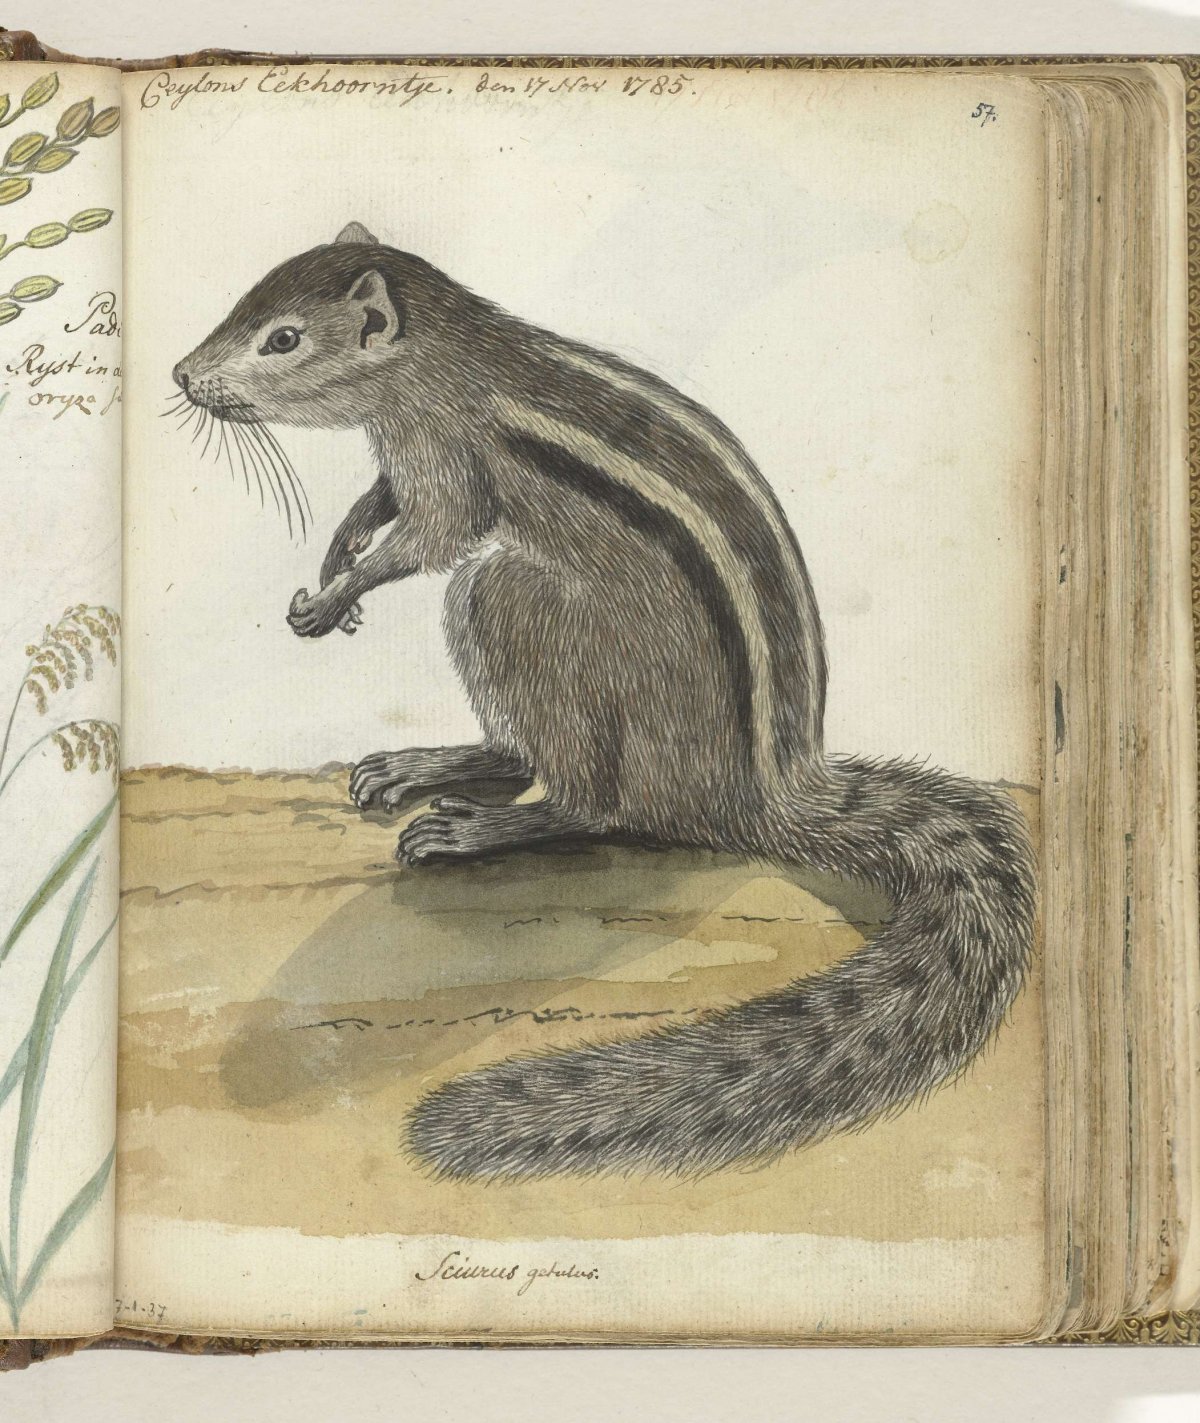 Ceylons eekhoorntje, Jan Brandes, 1785